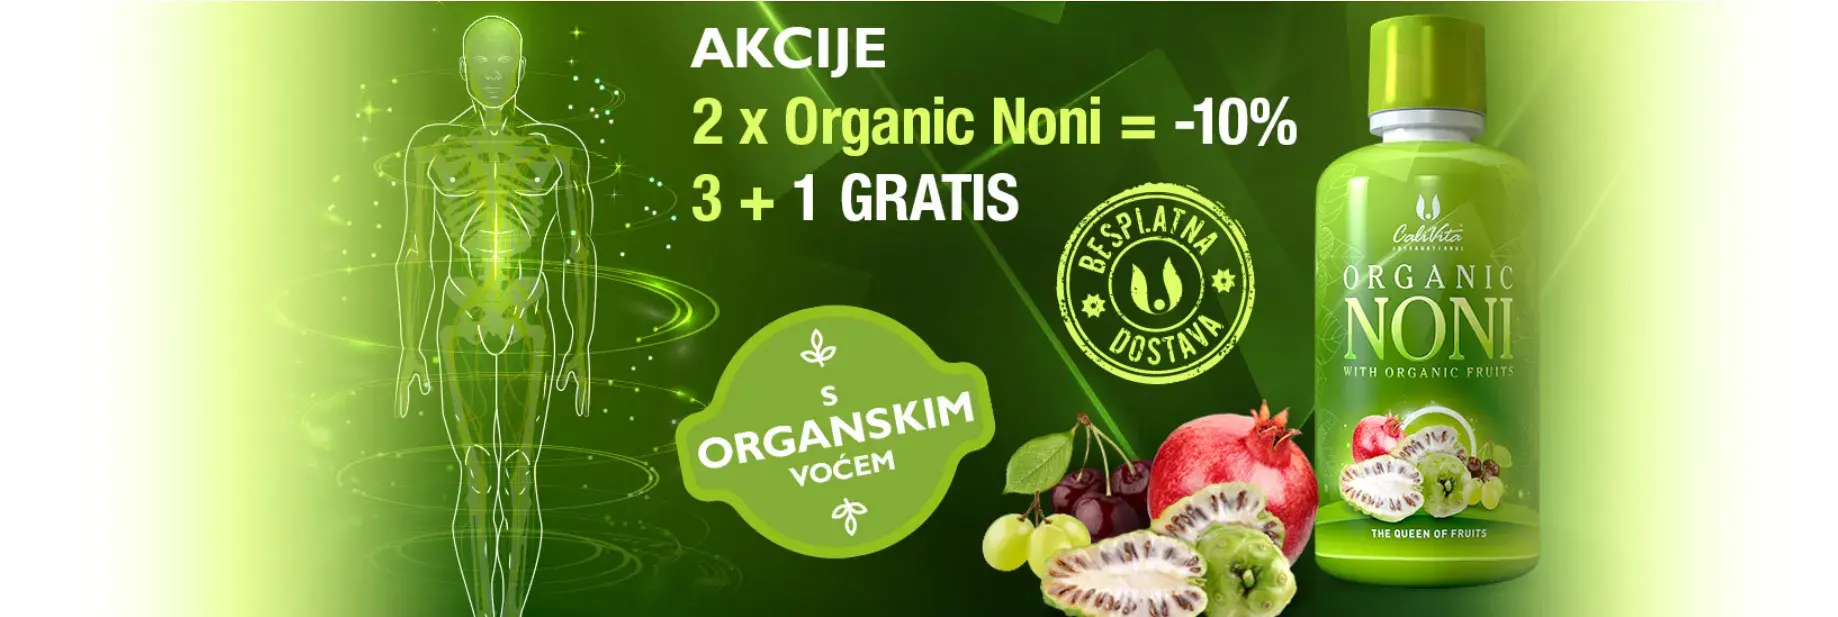 Organic Noni - promocija